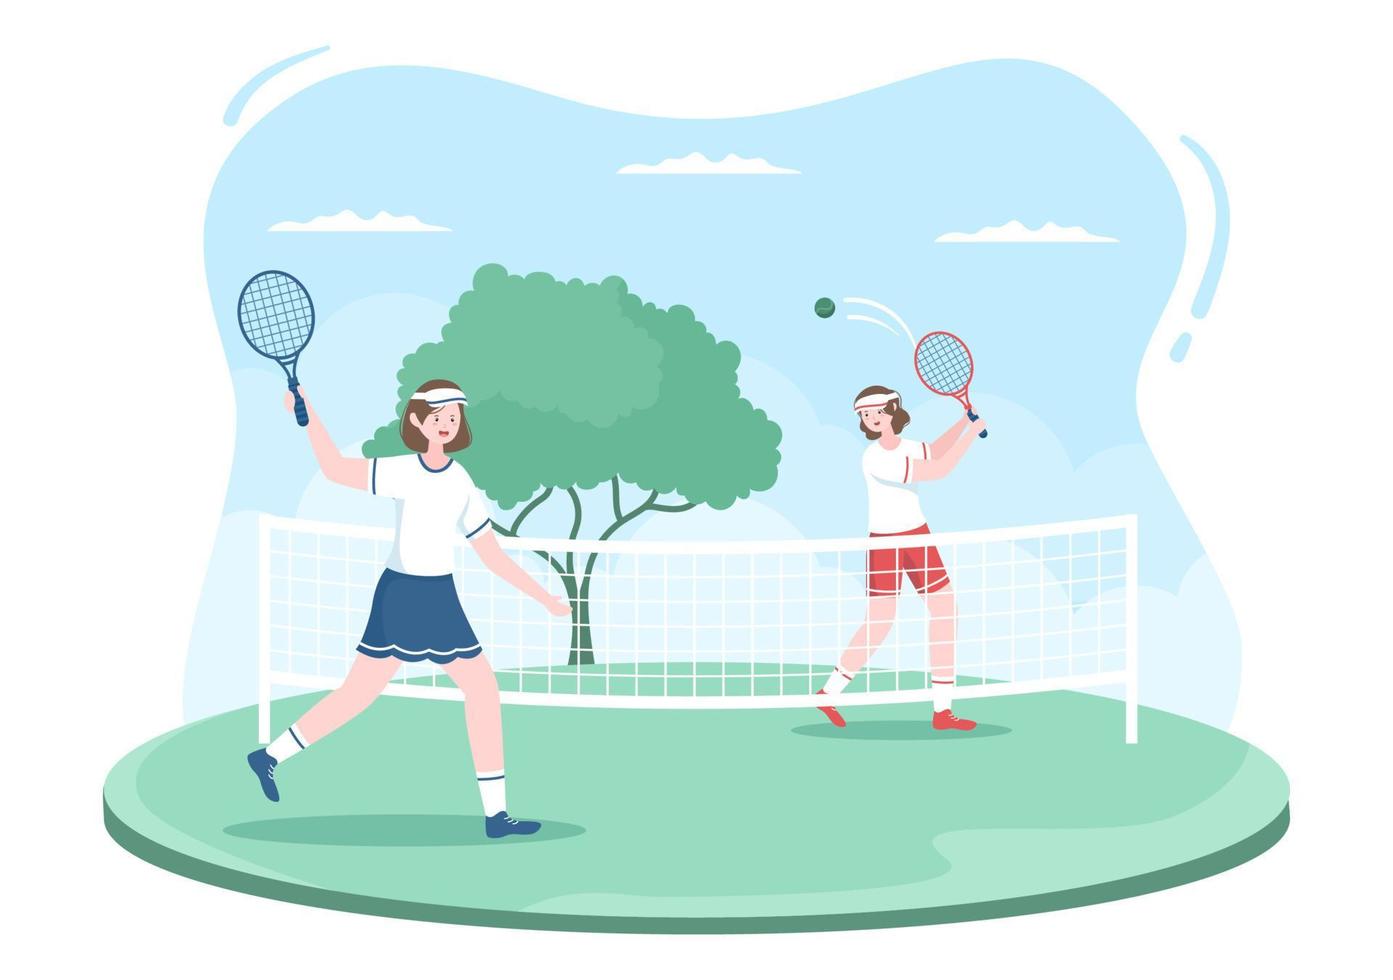 tenista con raqueta en mano y pelota en la cancha. gente haciendo partidos deportivos en ilustración de dibujos animados plana vector